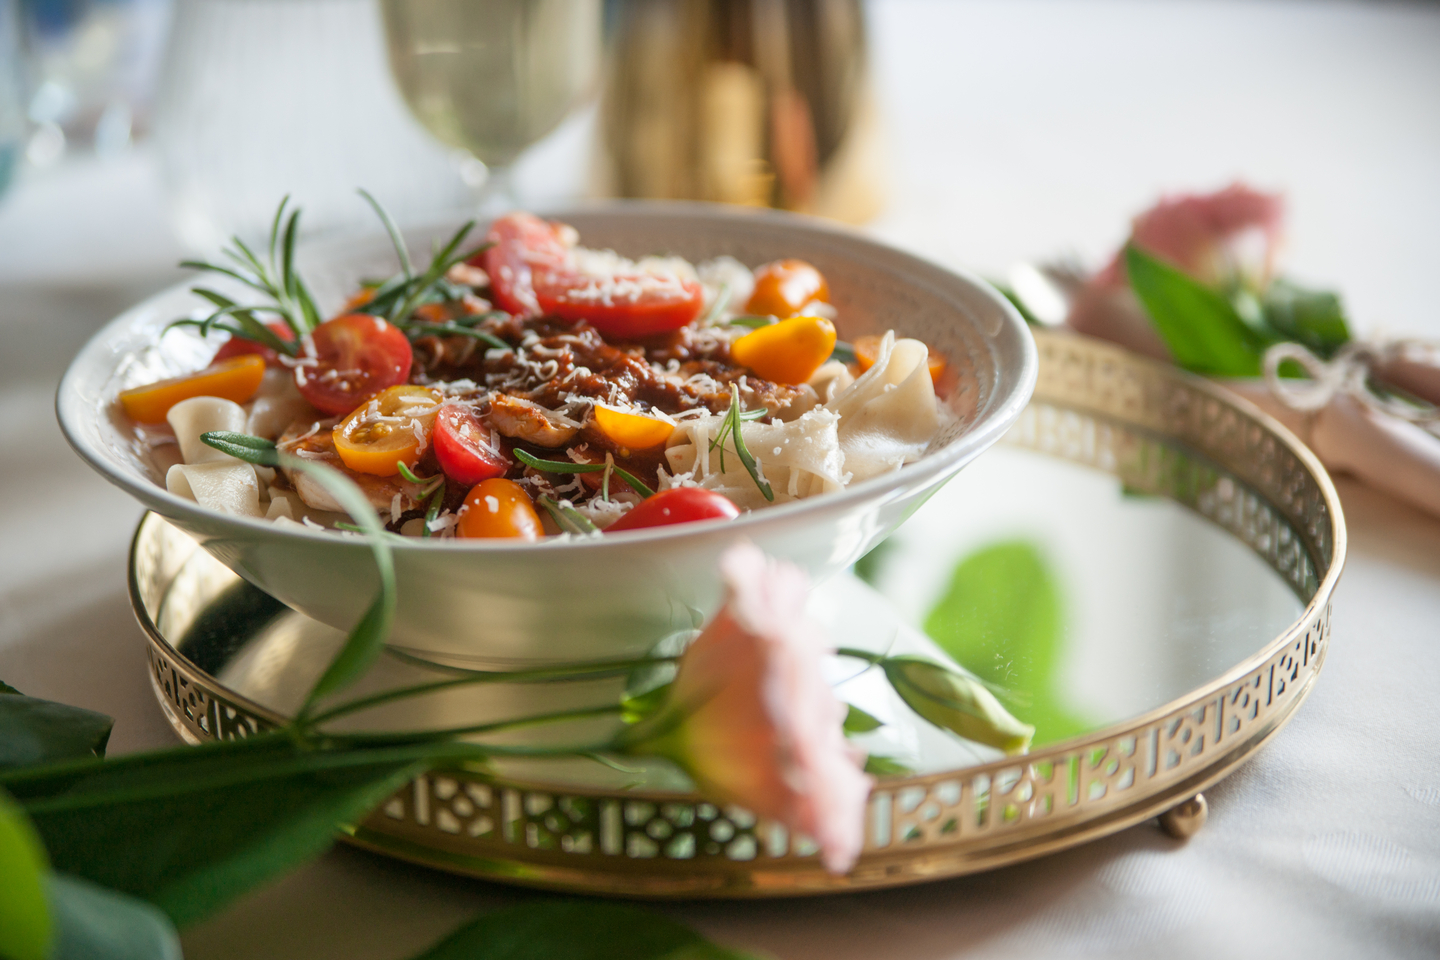 web3-food-dinner-salad-table-flowers-tomatoes-veronika-kirchner.jpg